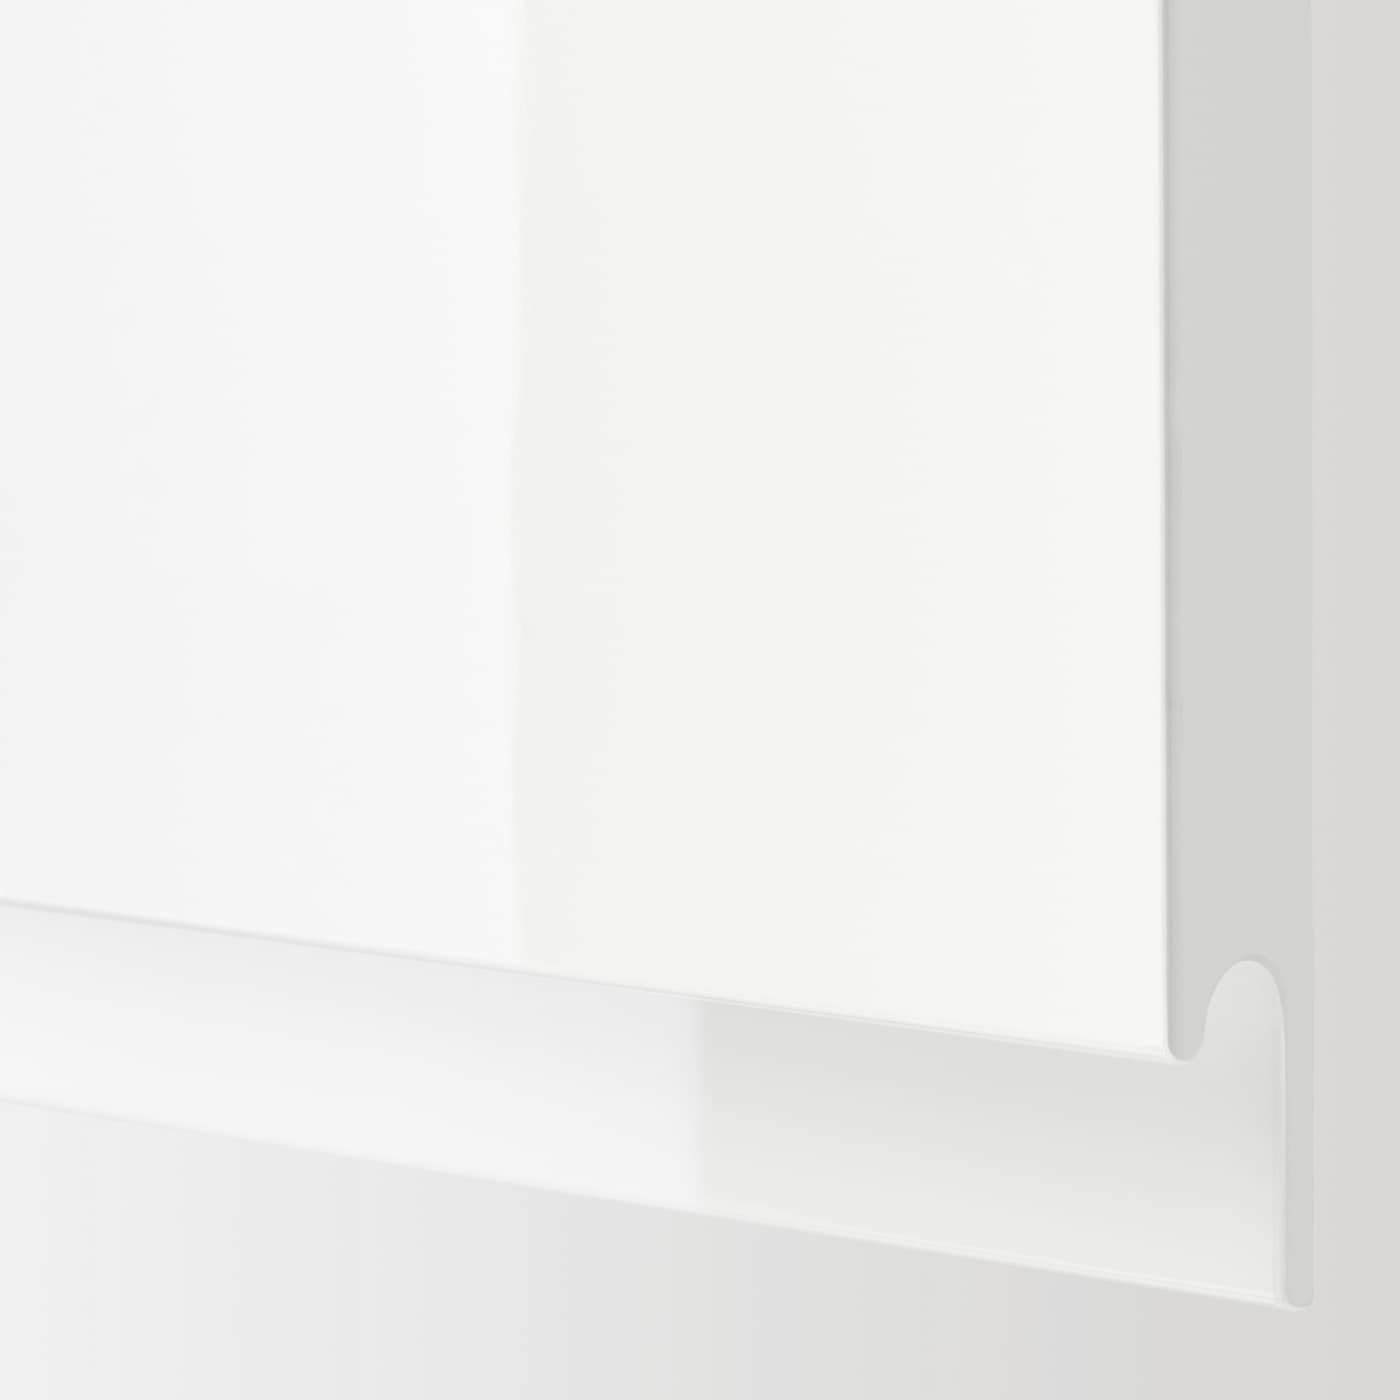 SELSVIKEN high-gloss white, Door, 60x64 cm - IKEA